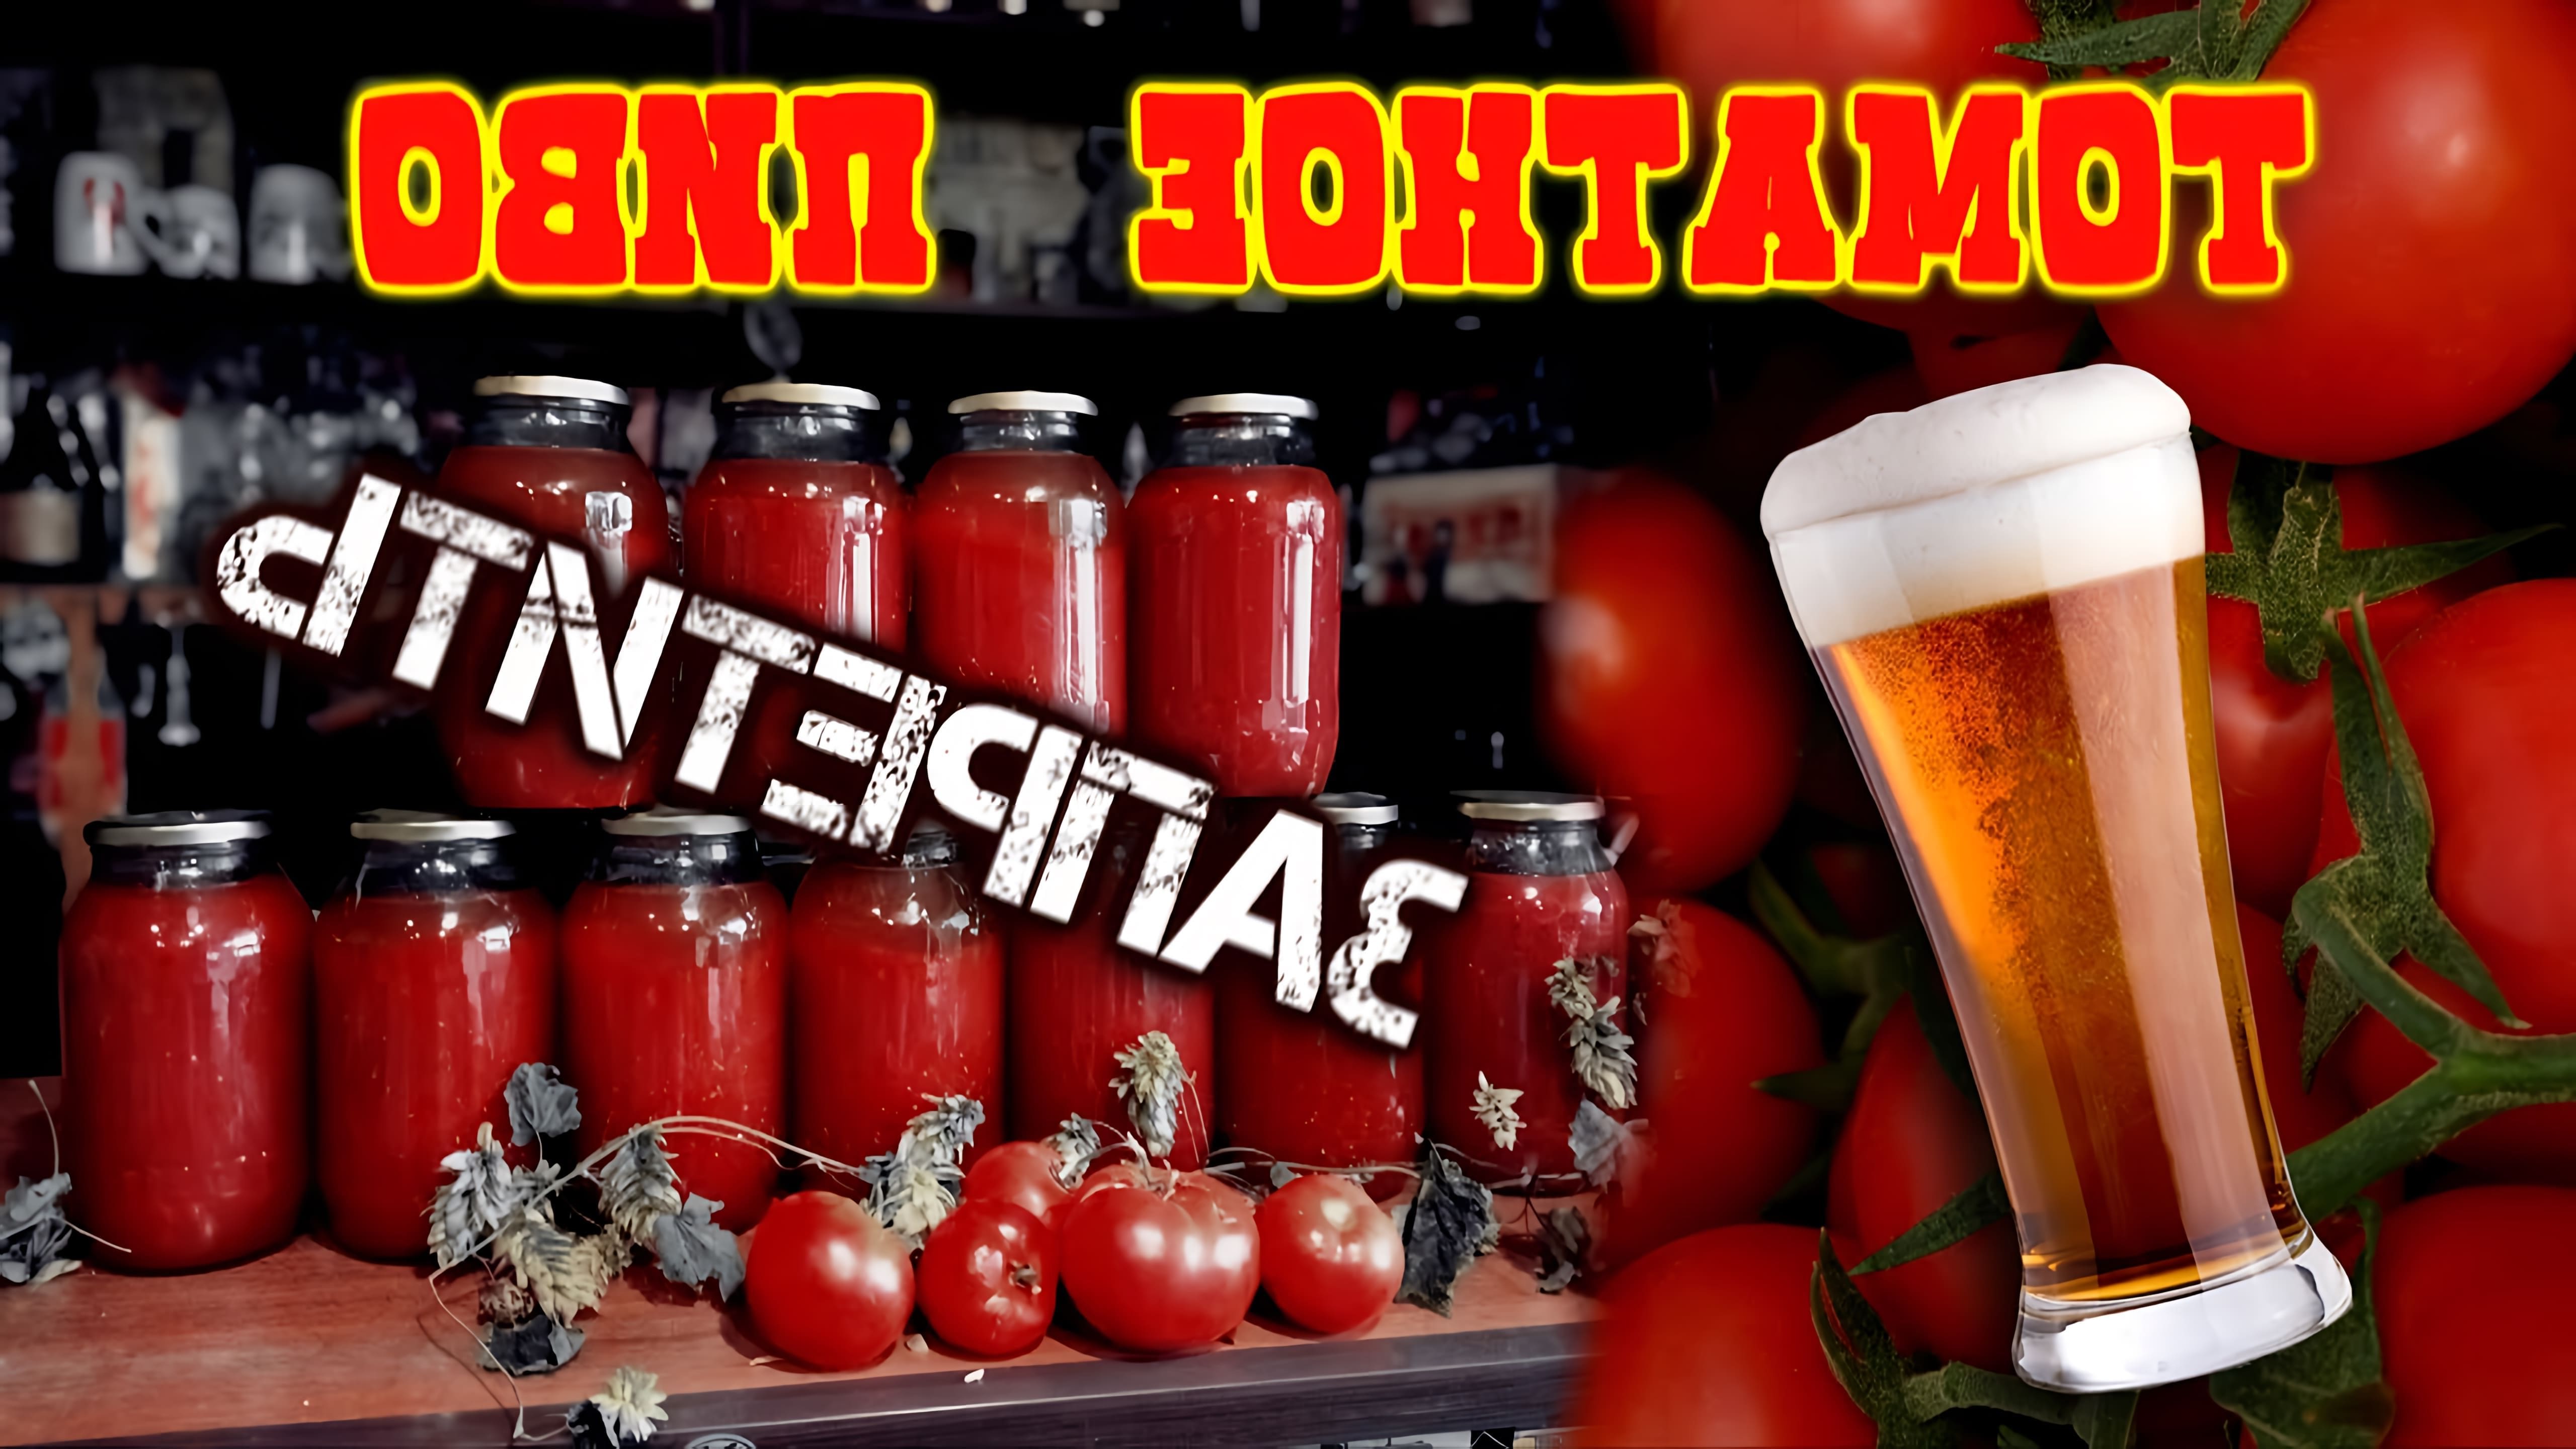 Томатное пиво - это пиво, в котором используется томатный сок или томатная паста